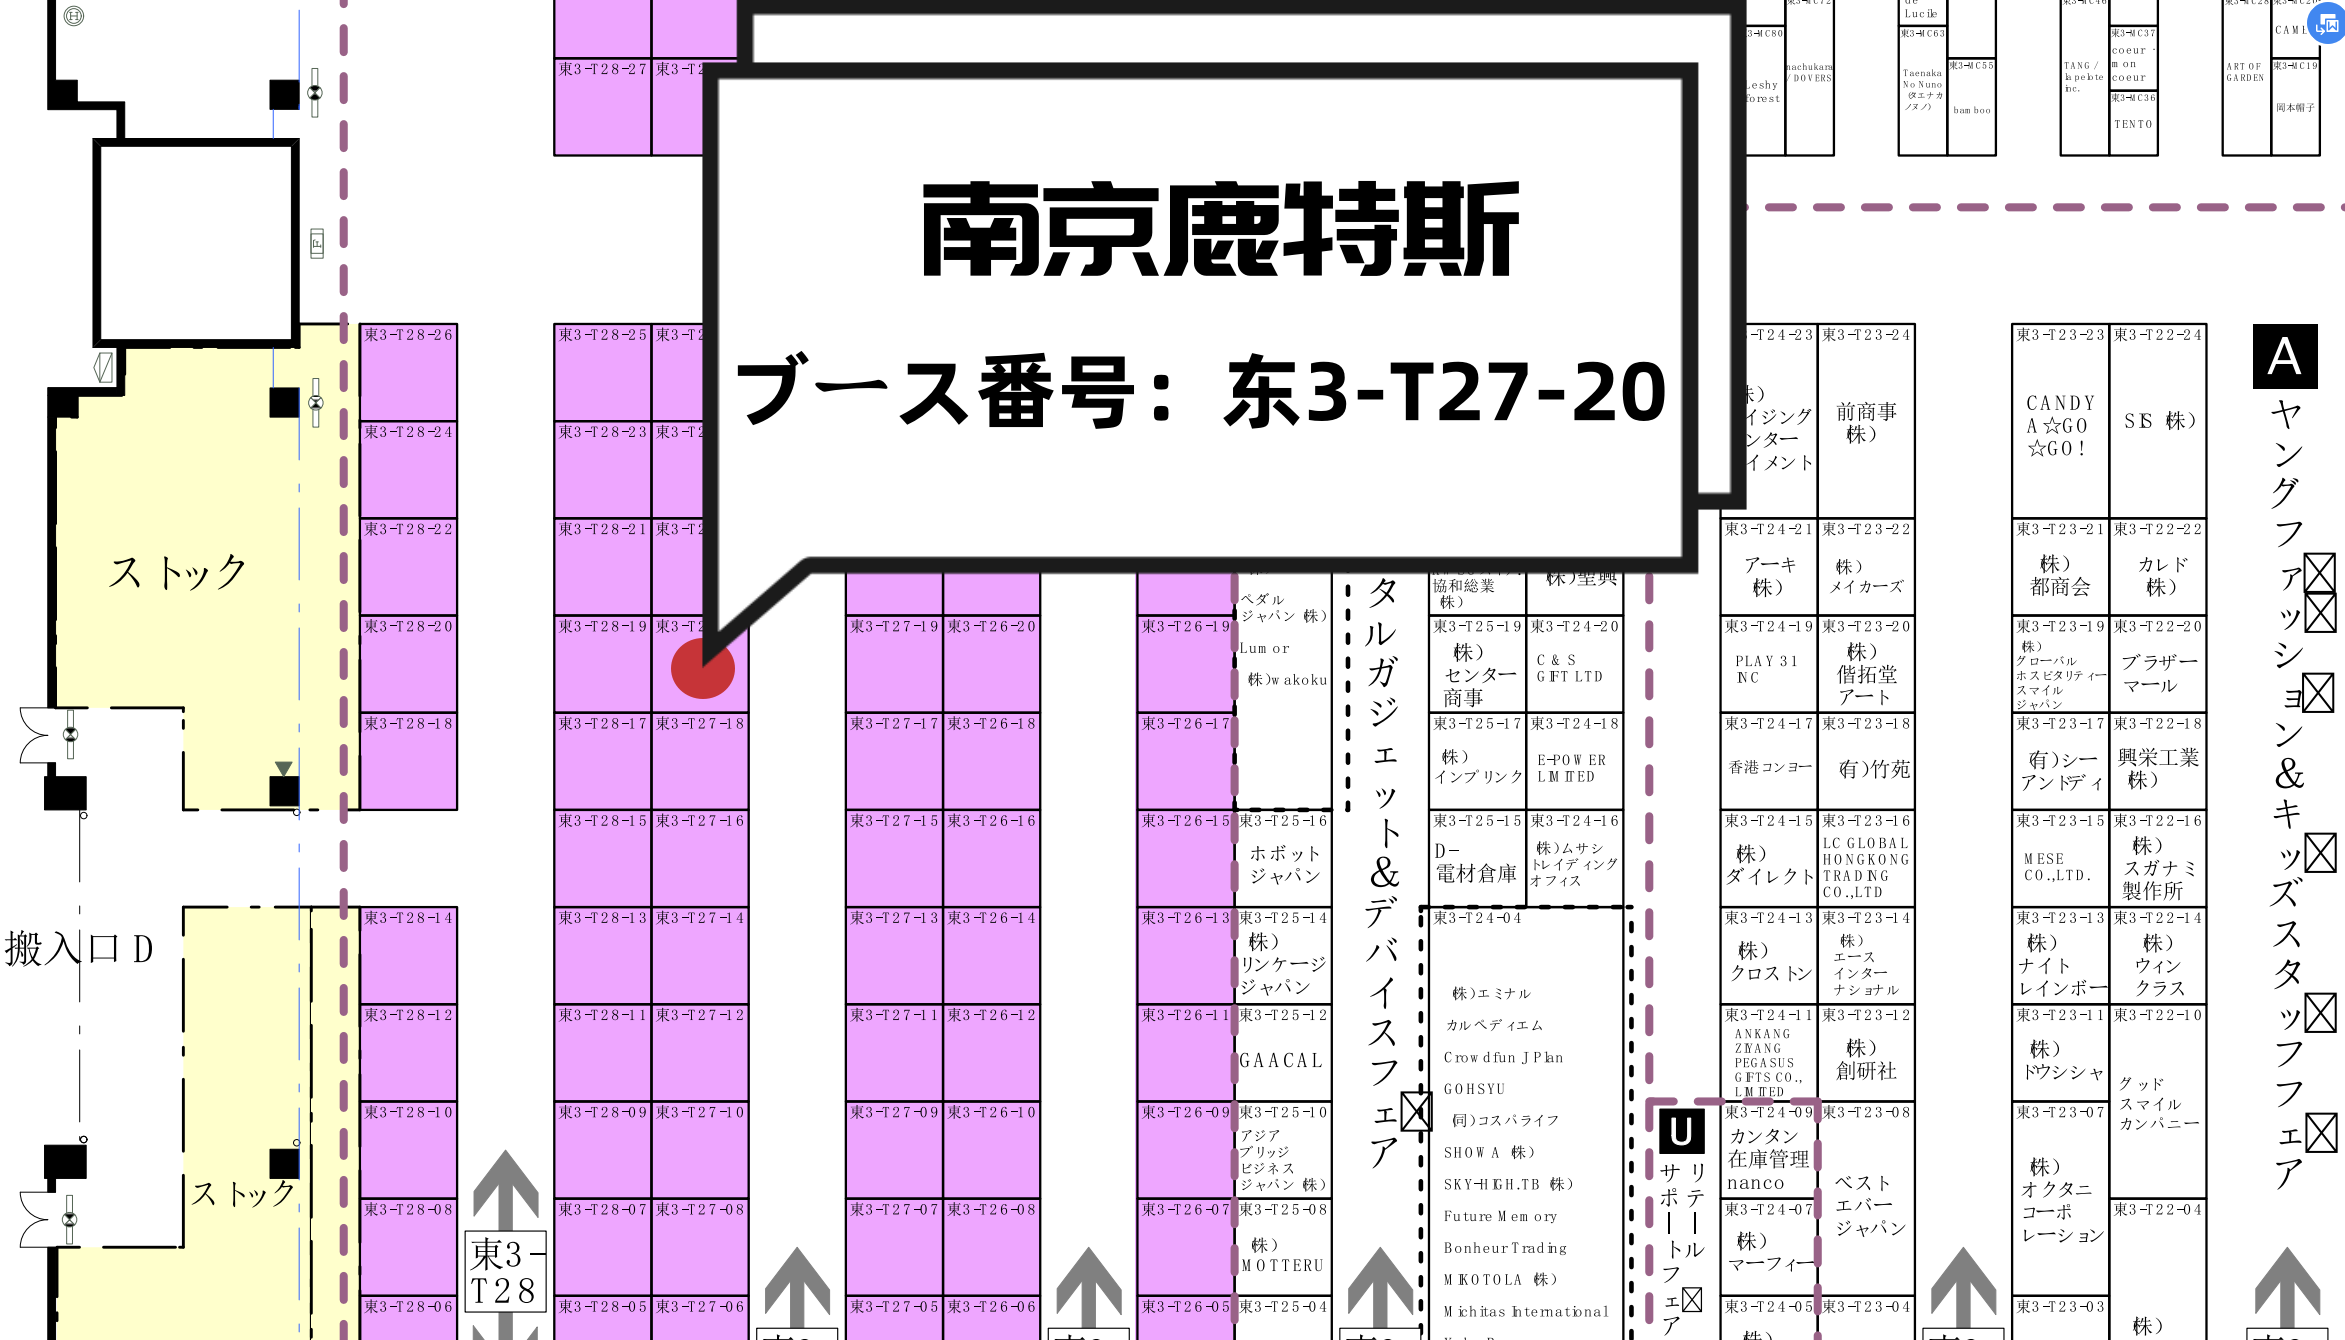 230814-东京礼品展摊位图 3.png